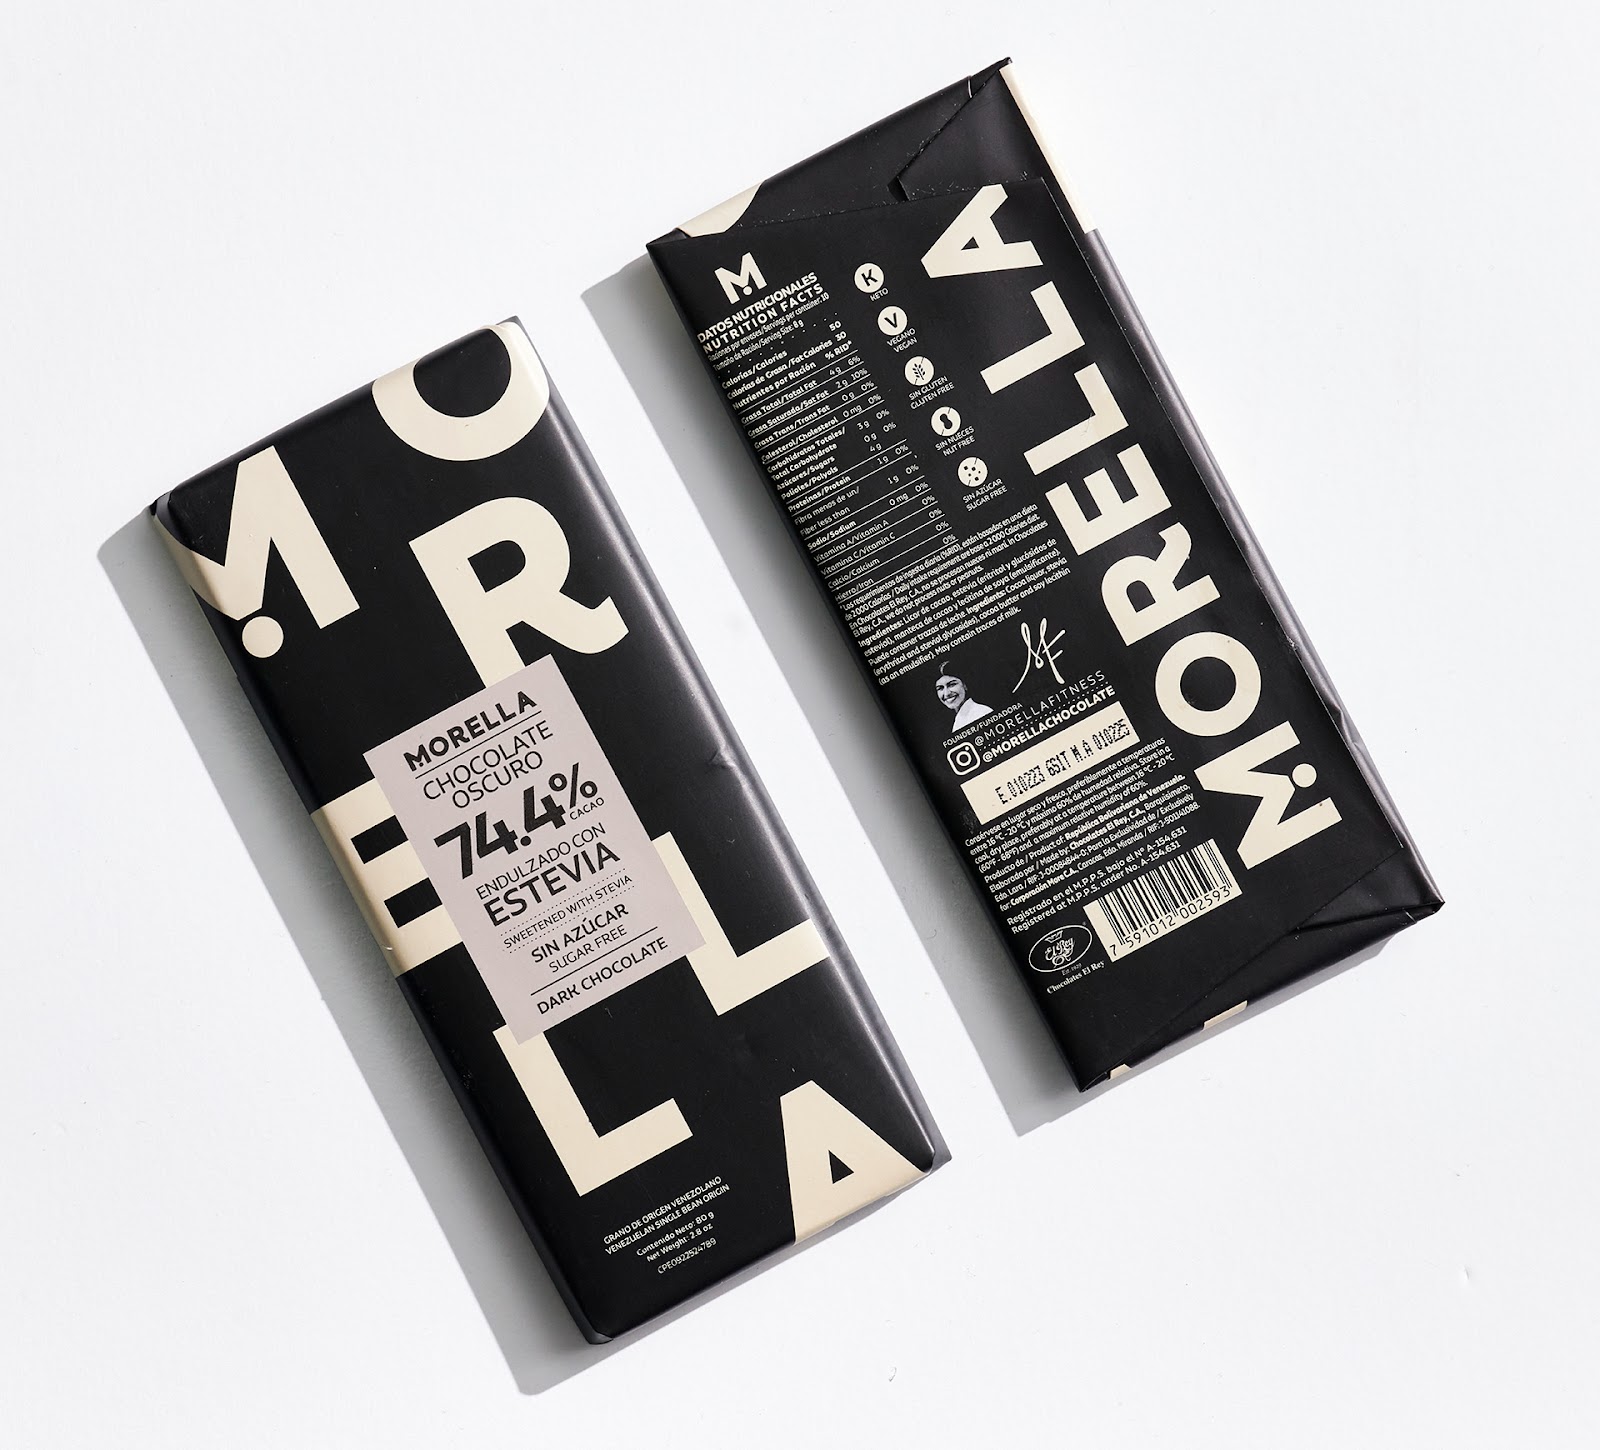 强烈的黑白反差！Morella巧克力品牌包装设计